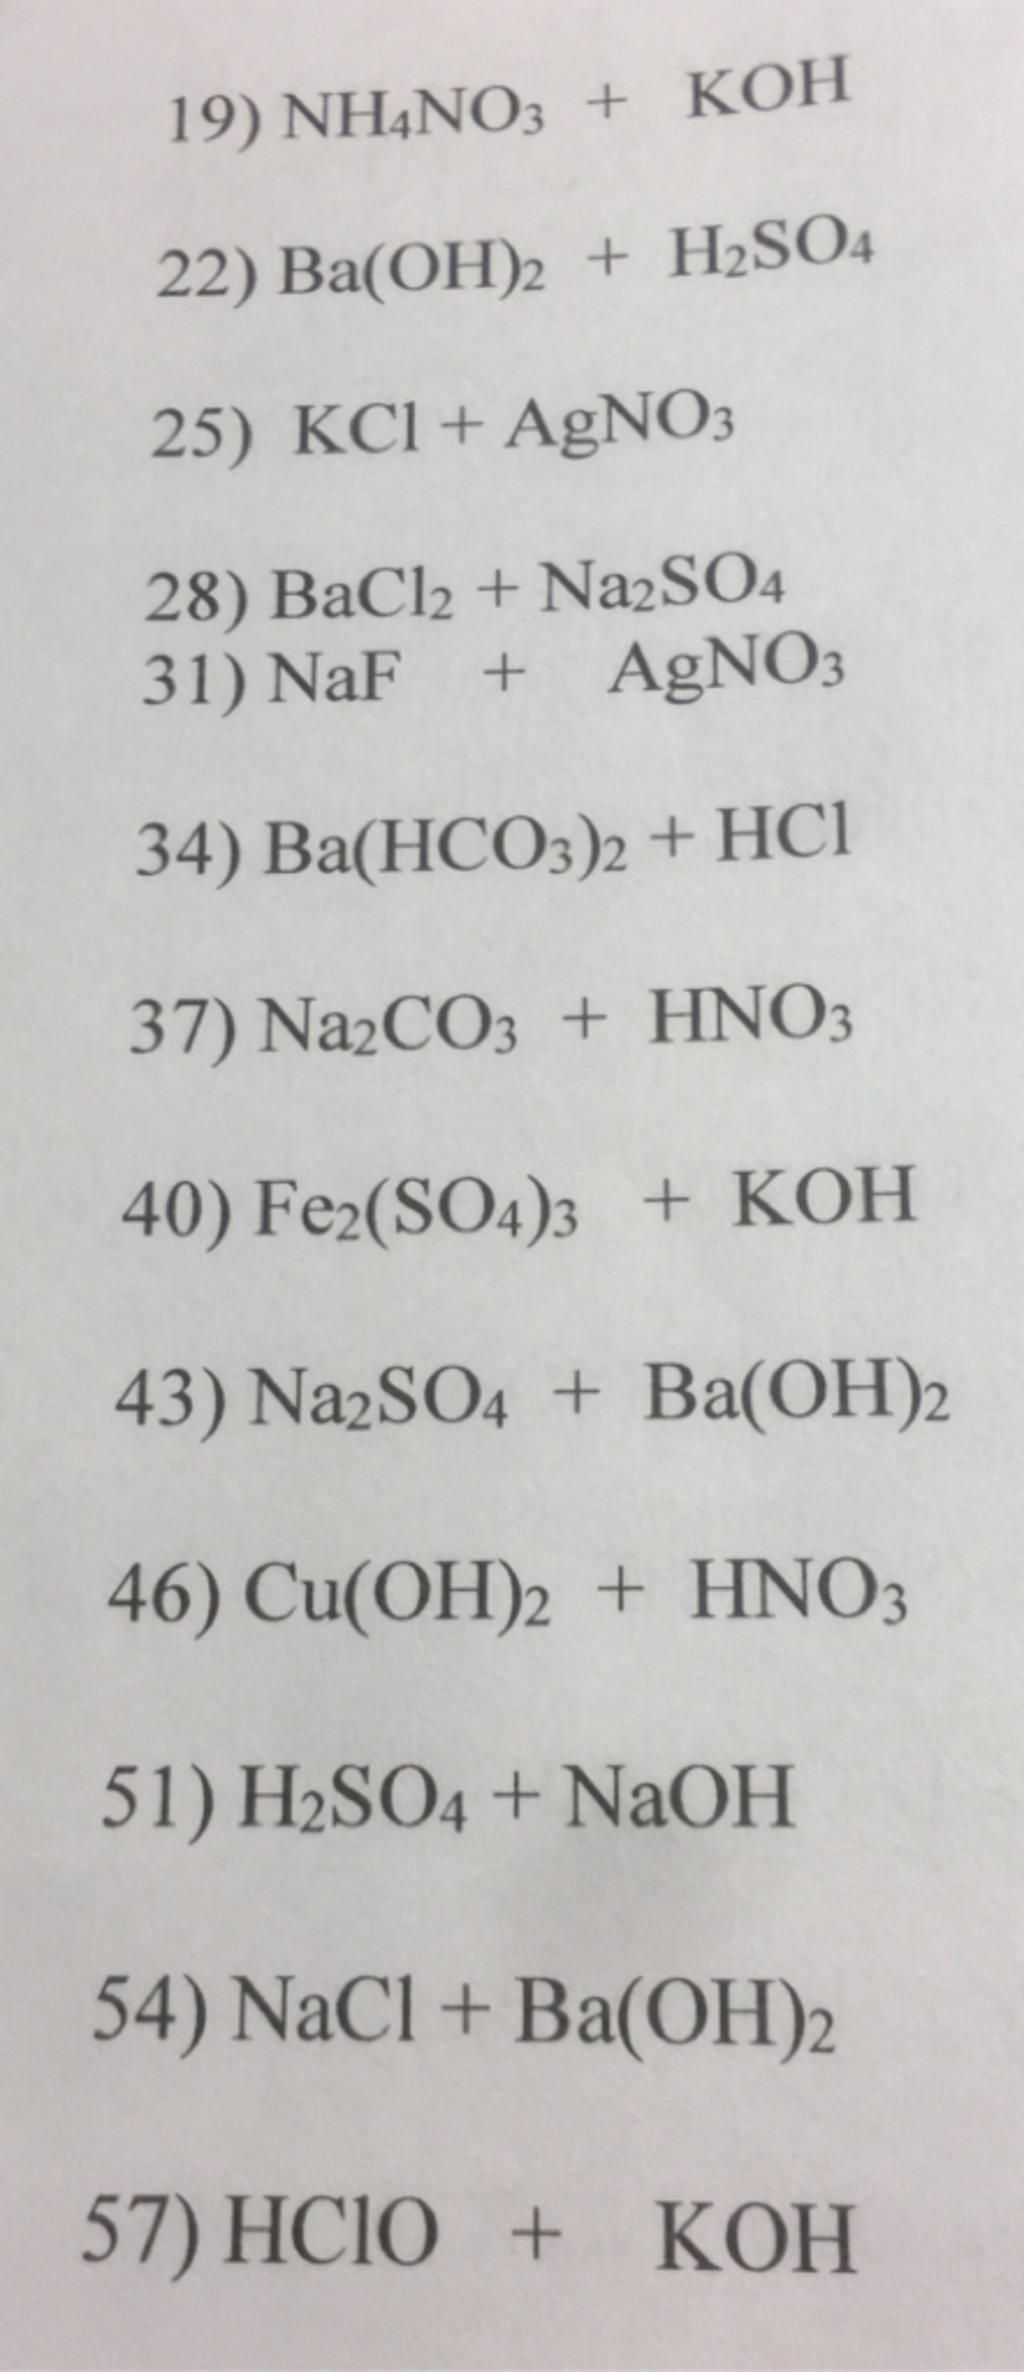 Phương trình phân tử đầy đủ và phương trình ion đầy đủ của phản ứng giữa NH4NO3 và NaOH là gì?
